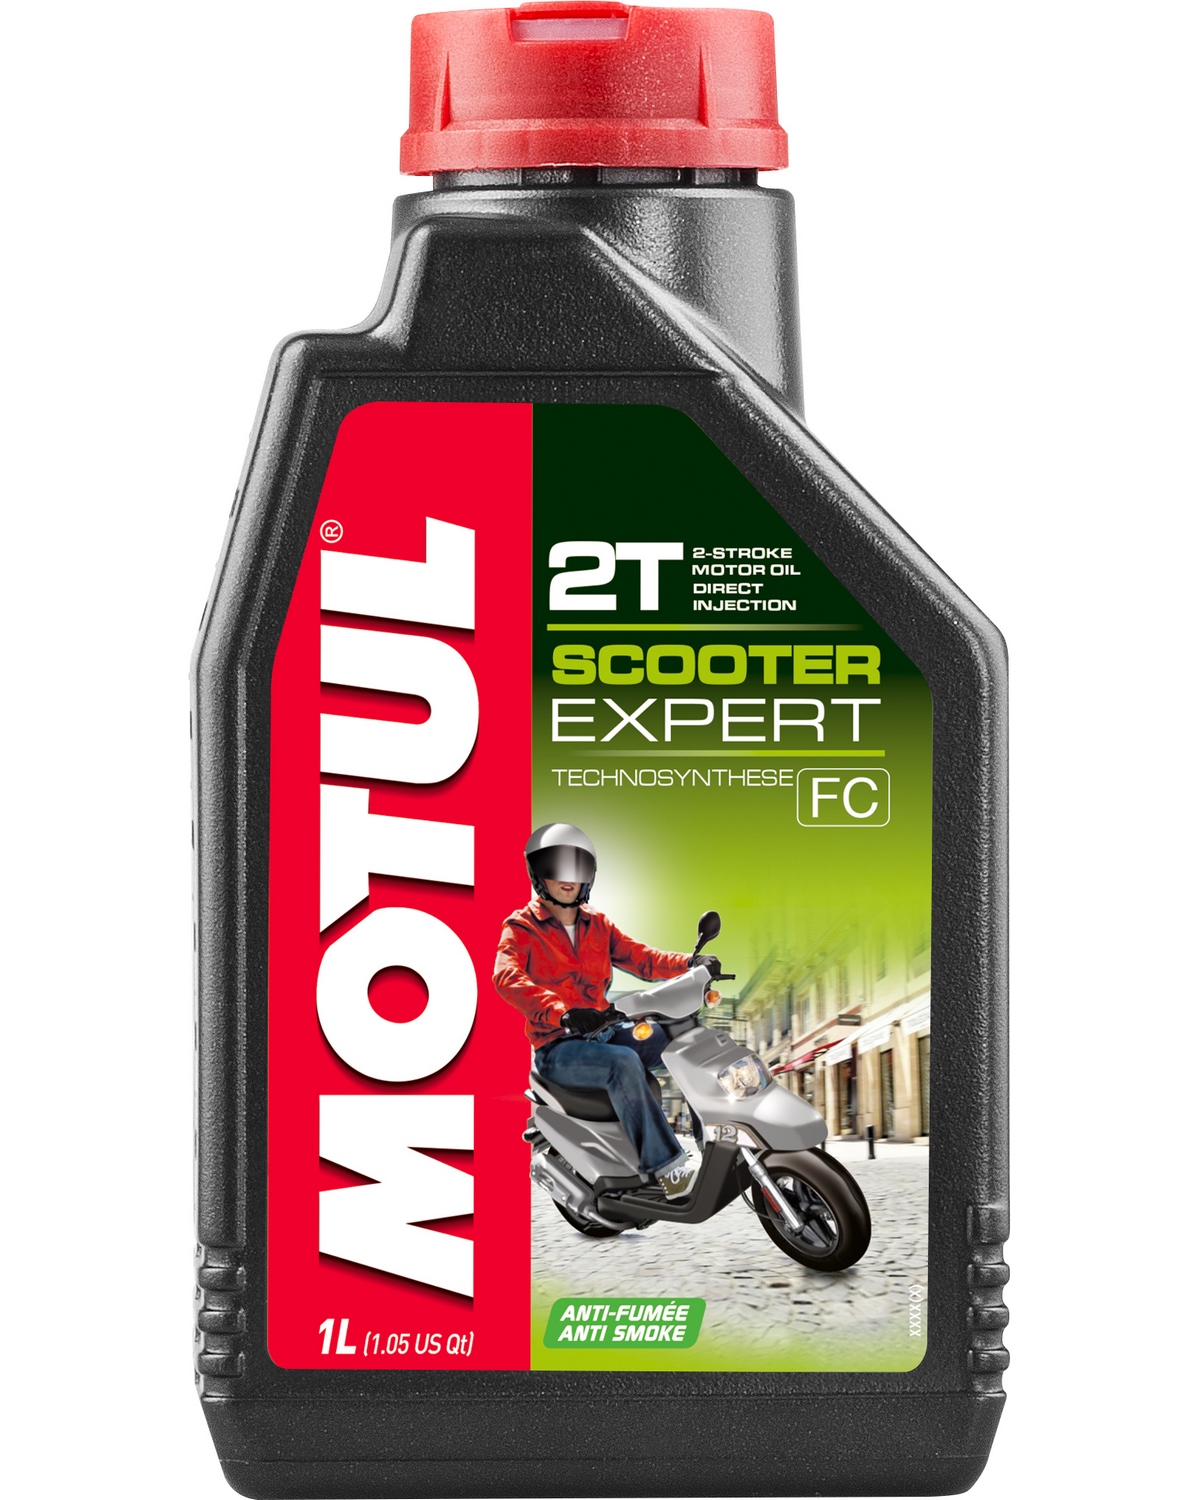 Clean Moto - produit nettoyant moto, scooter, deux roues - 5 litres